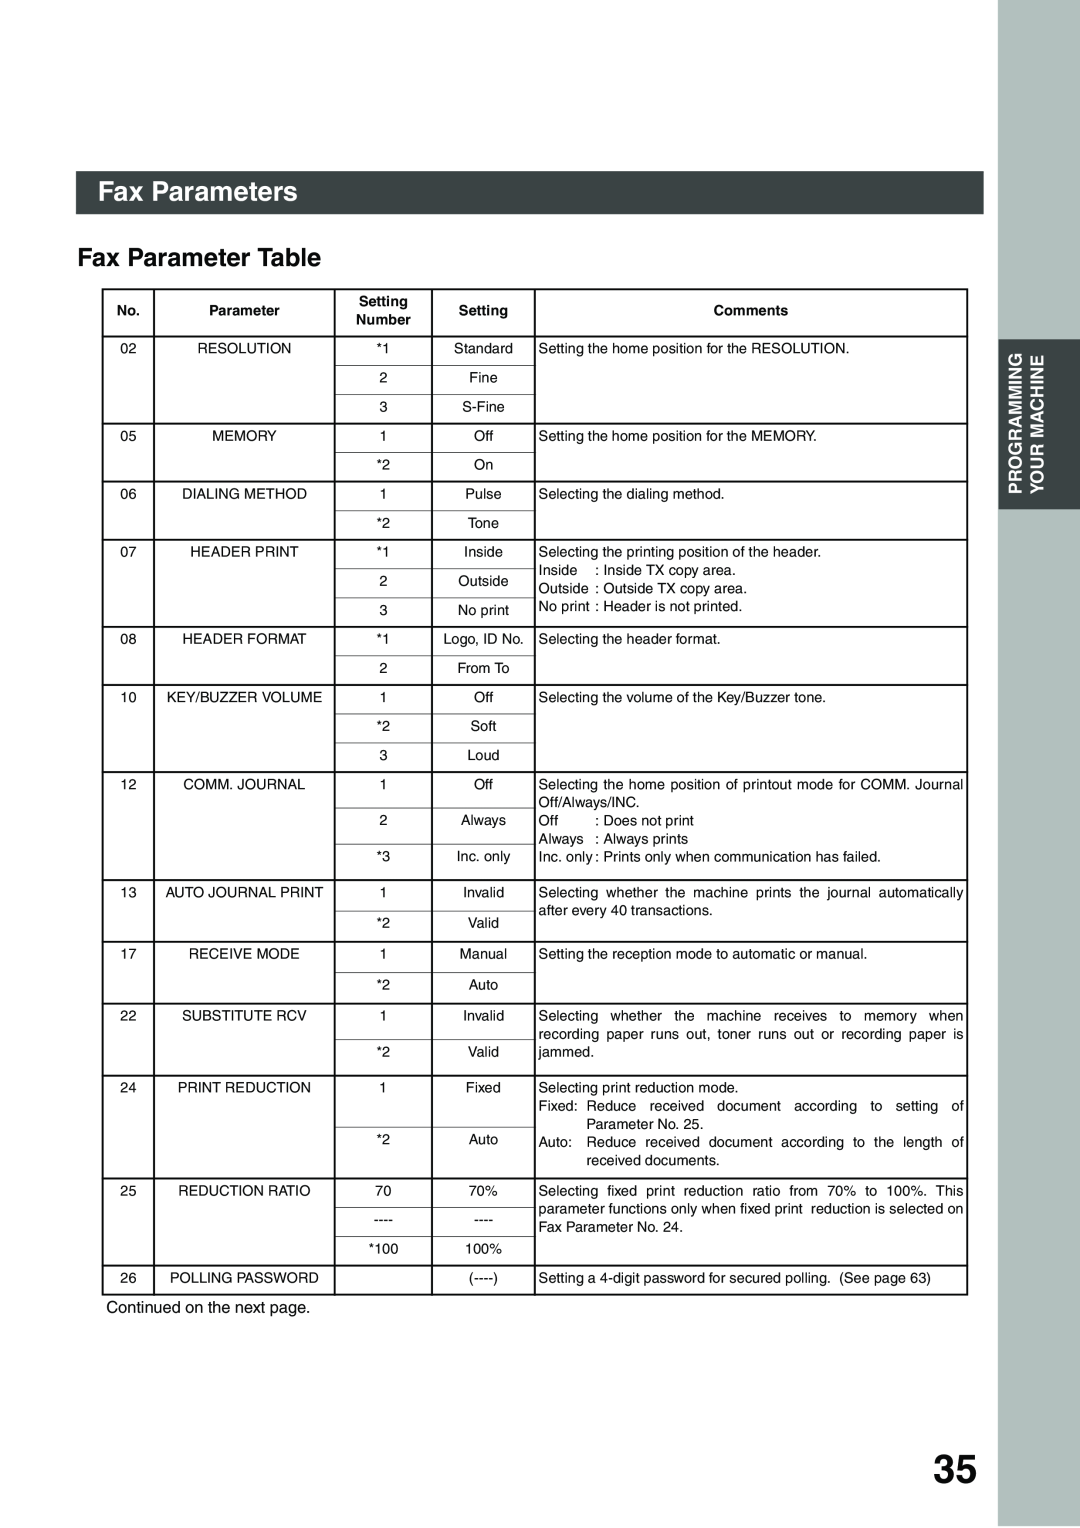 Panasonic DP-135FP appendix Fax Parameter Table, Fax Parameters, Setting, Comments 